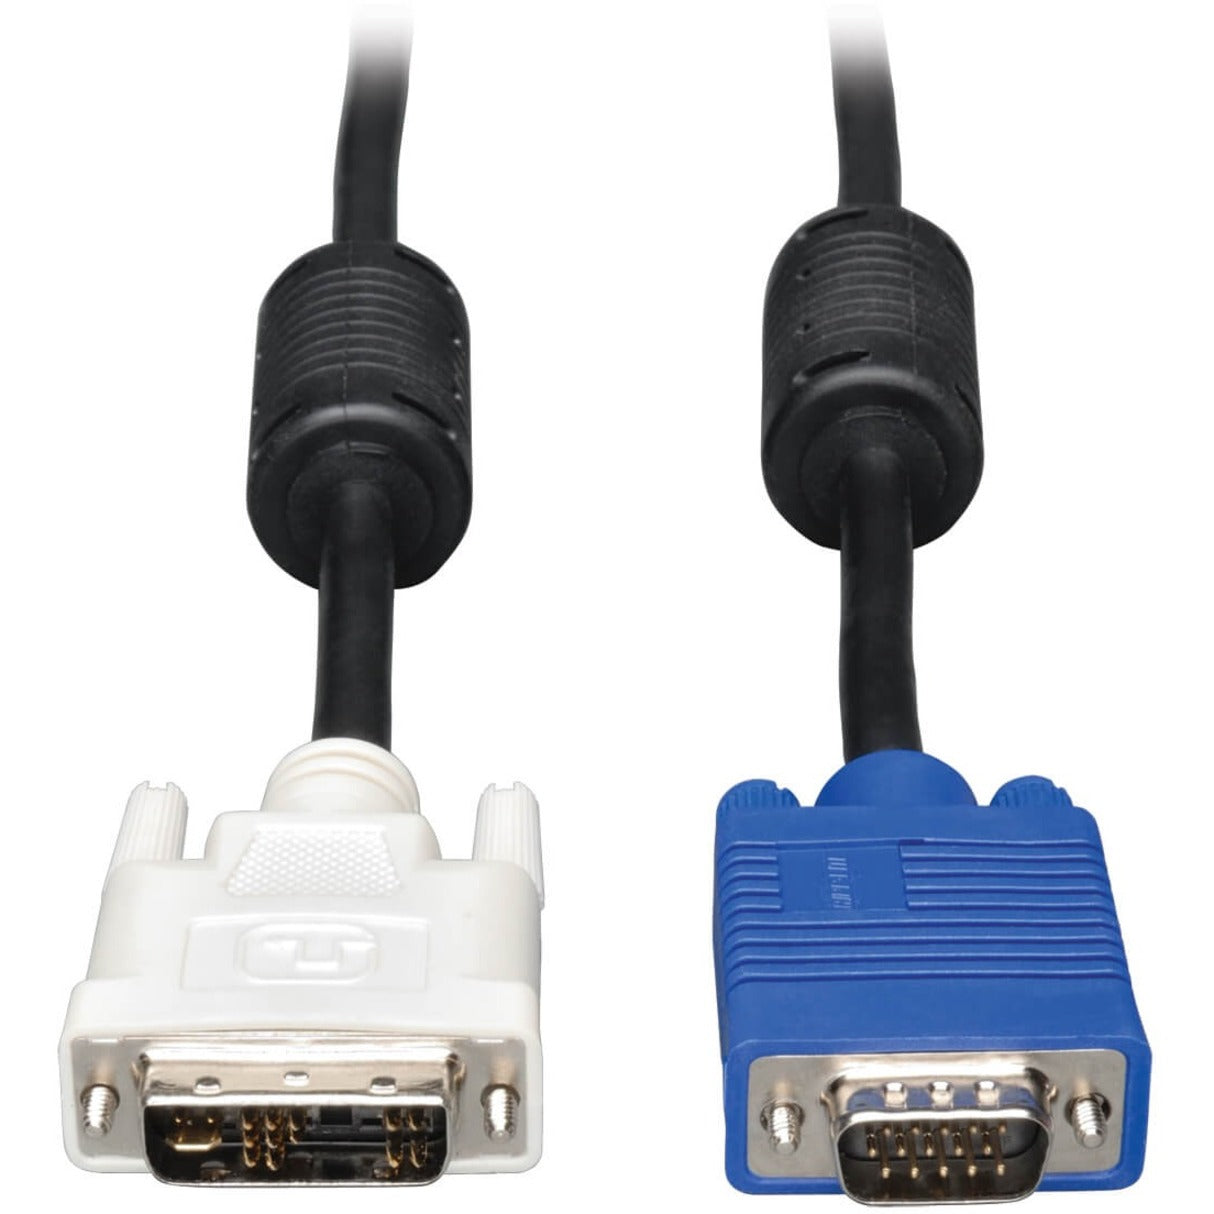 Tripp Lite P556-010 同轴 DVI/VGA 电缆，10 ft，成型，防止绞紧，EMI/RF 保护 Tripp Lite 的品牌名称翻译为“特力”。